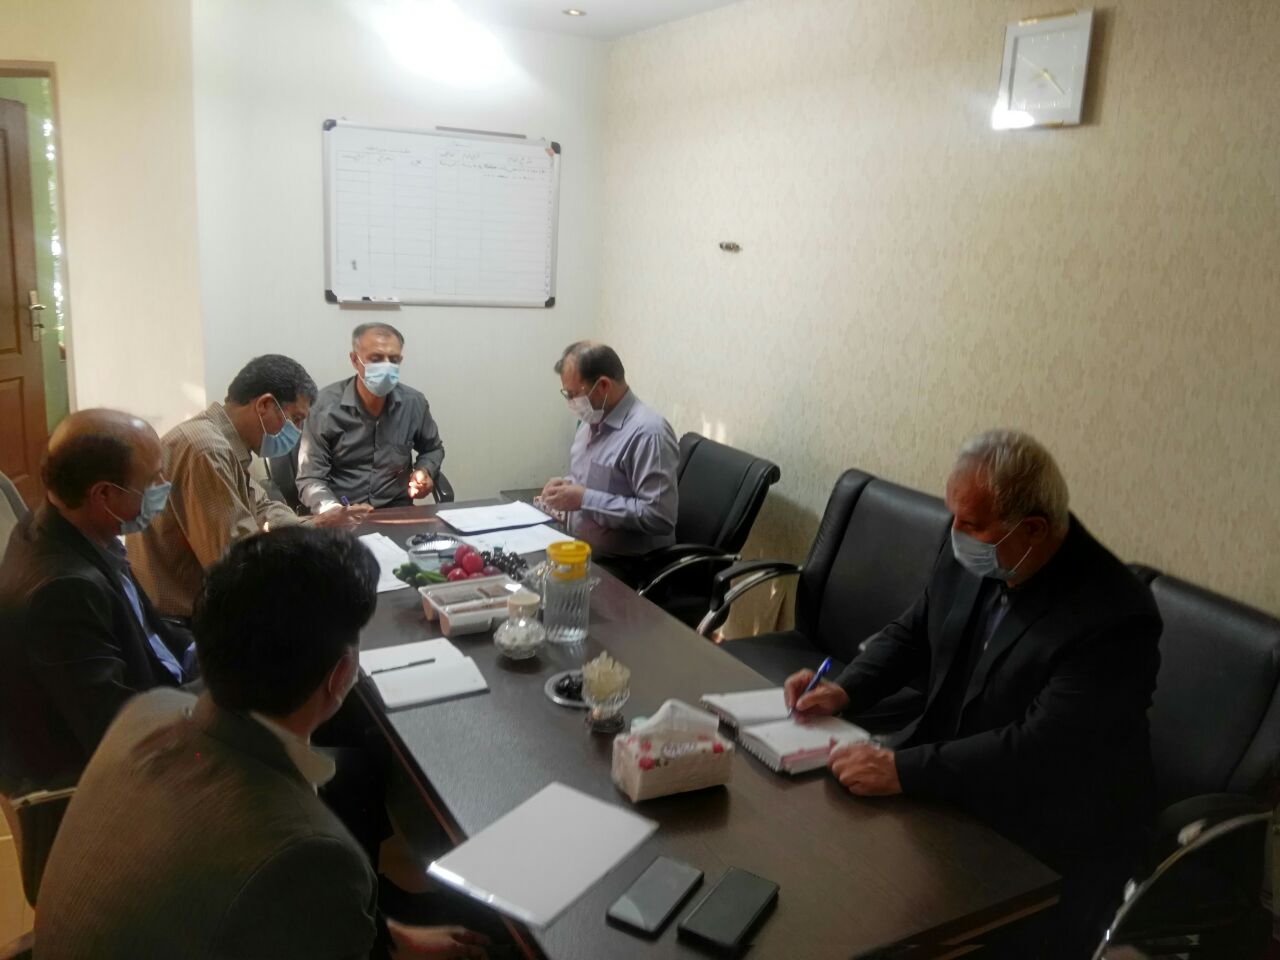 جلسه شورای هماهنگی روسای کانون های نیروهای مسلح غرب استان تهران در دفترکانون ناجا برگزار شد.